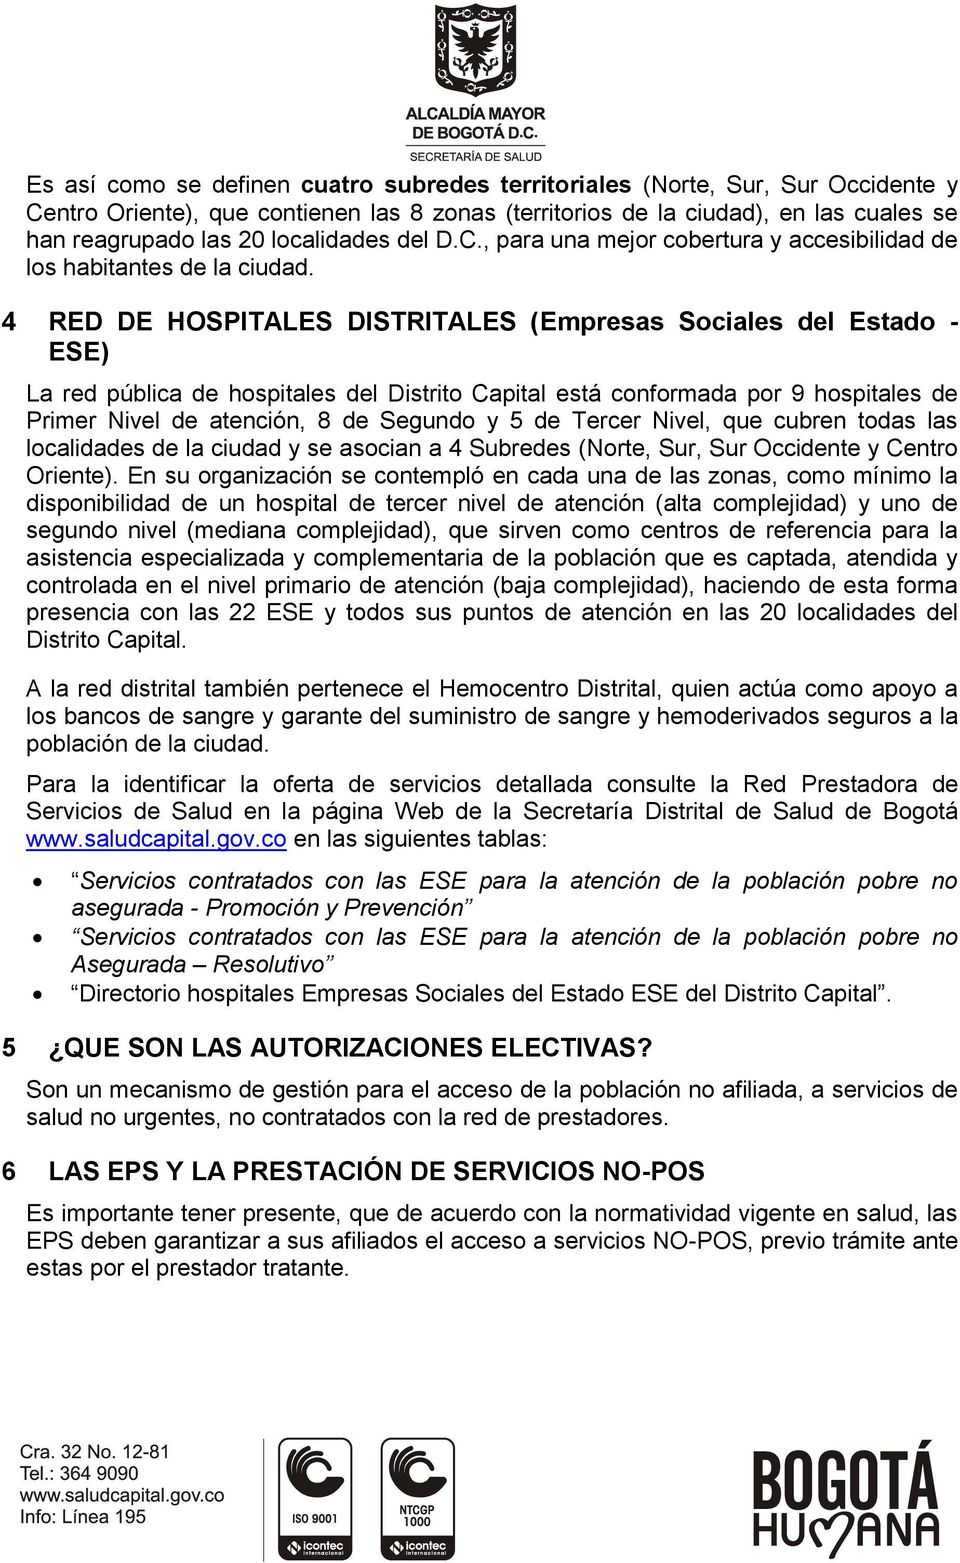 4 RED DE HOSPITALES DISTRITALES (Empresas Sociales del Estado - ESE) La red pública de hospitales del Distrito Capital está conformada por 9 hospitales de Primer Nivel de atención, 8 de Segundo y 5